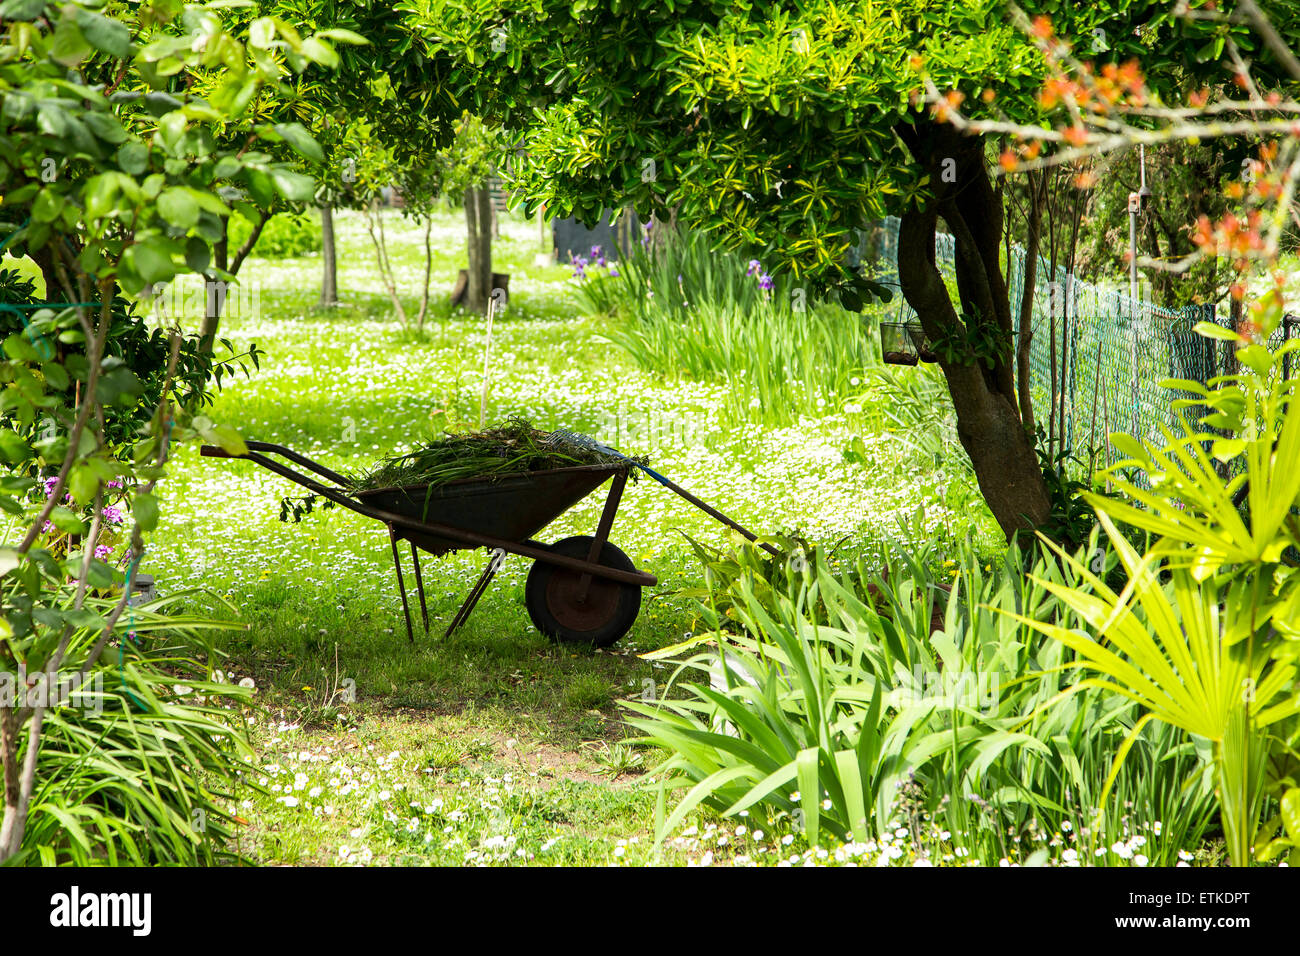 Di giardinaggio, carriola con utensili da giardinaggio in un verde giardino rurale con alberi da frutta tutto su una soleggiata giornata di primavera Foto Stock